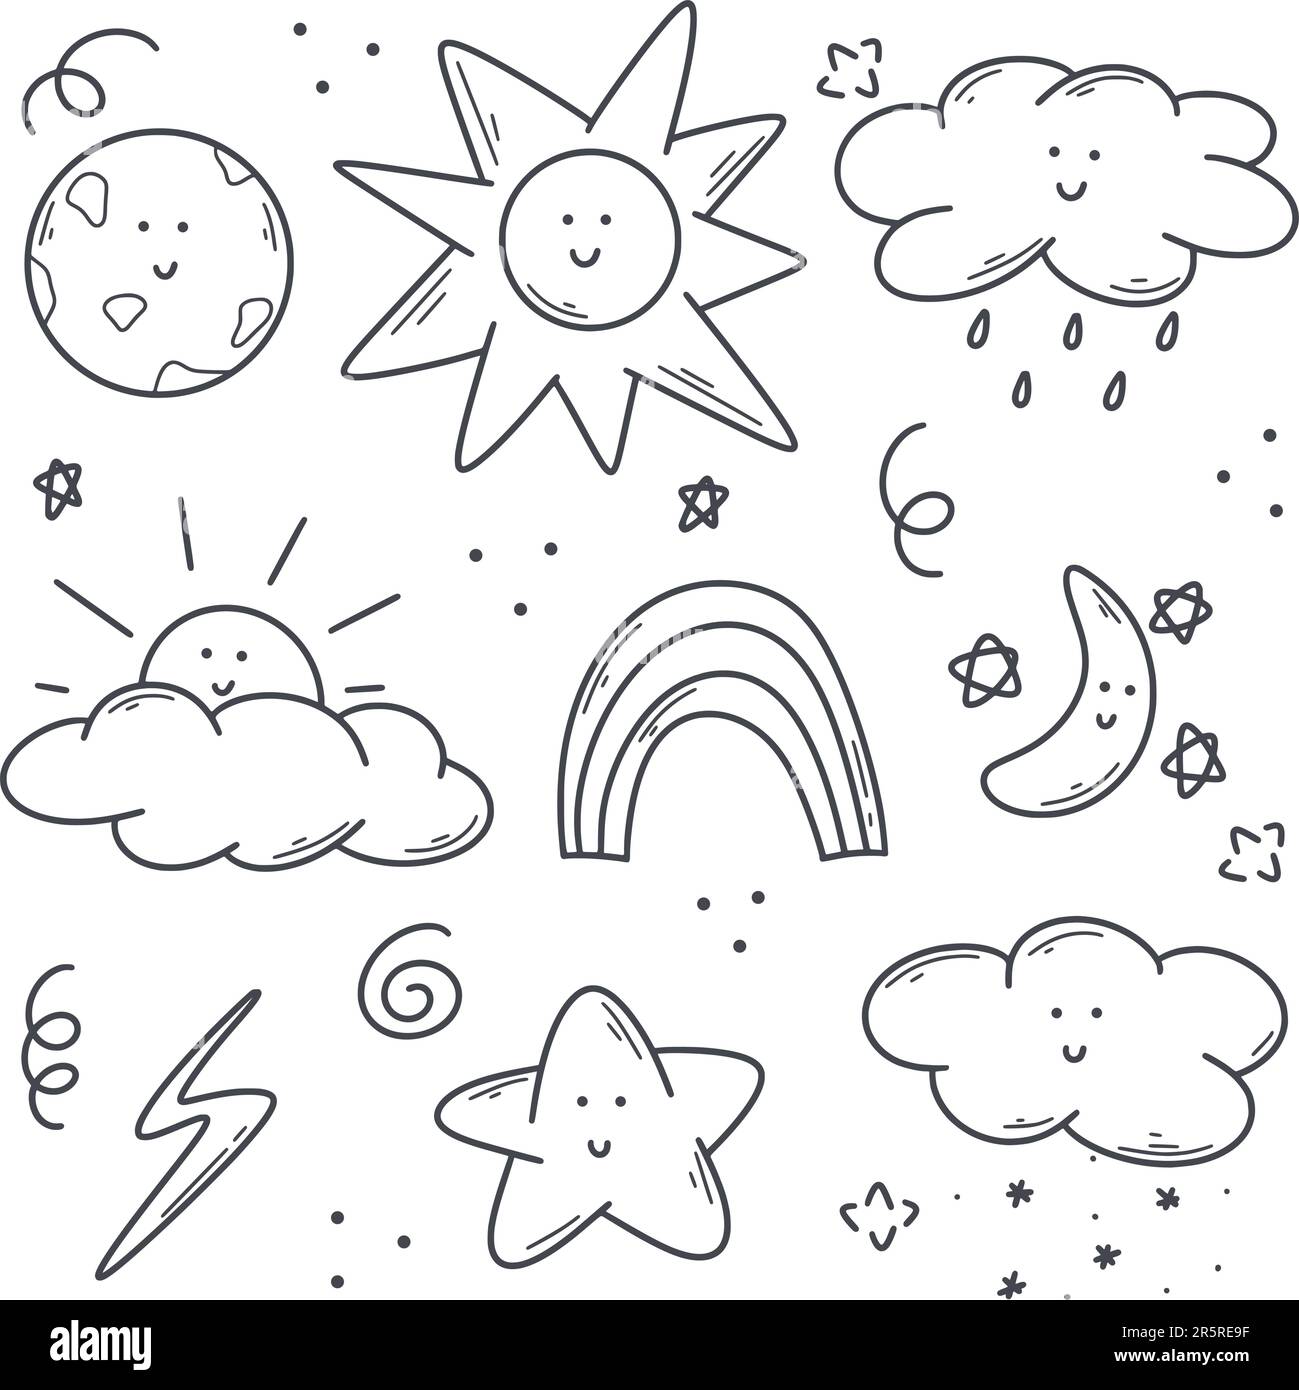 Tracciato a mano carino meteo set. Illustrazione di schizzi di fenomeni naturali - temporale, pioggia, sole, luna, stelle, arcobaleno. Raccolta di caratteri semplici Illustrazione Vettoriale